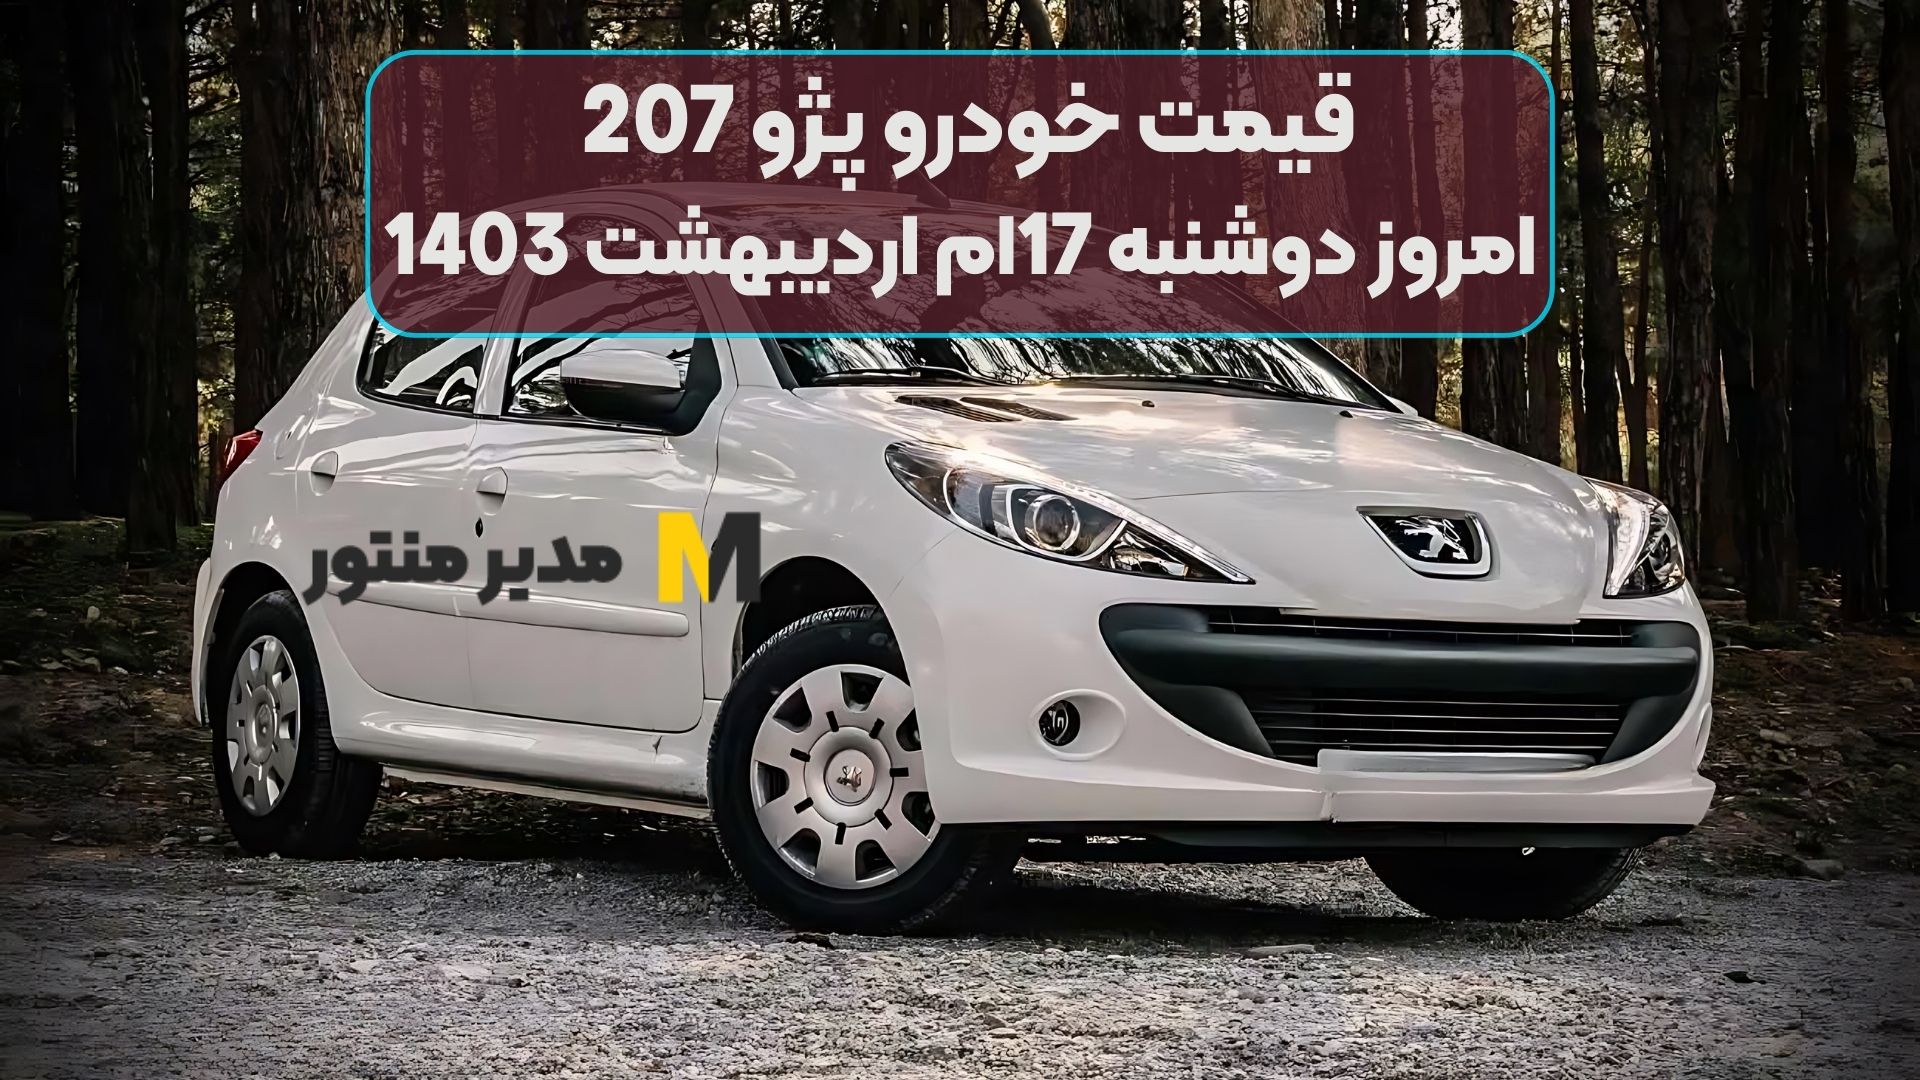 قیمت خودرو پژو 207 امروز دوشنبه 17ام اردیبهشت 1403